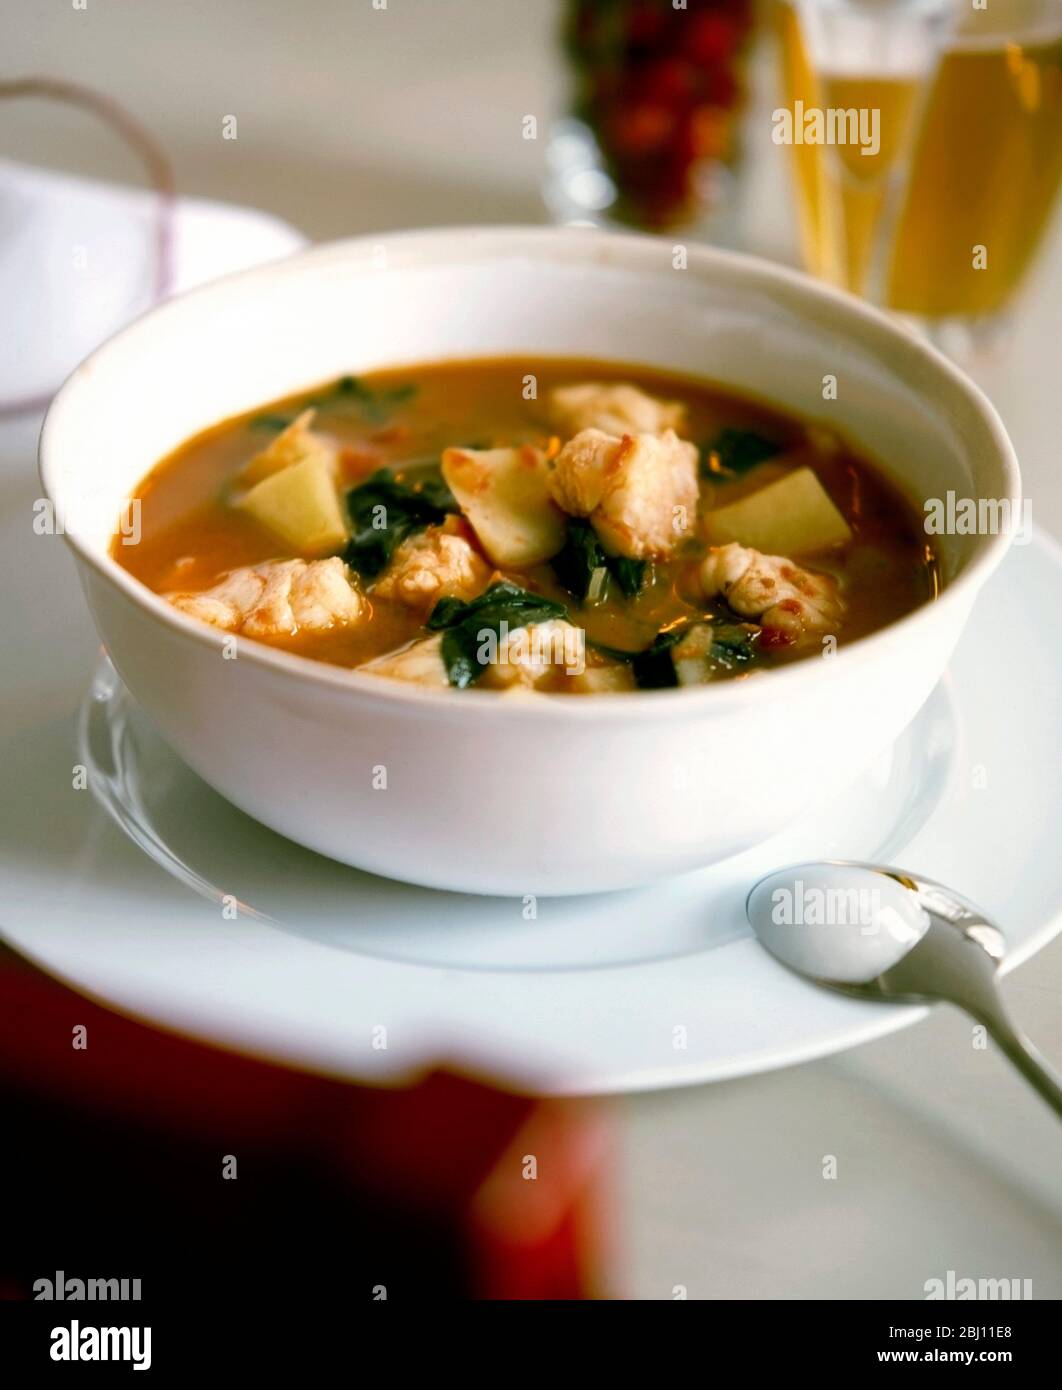 Soupe épicée de poisson ou ragoût avec des poissons et légumes - Banque D'Images